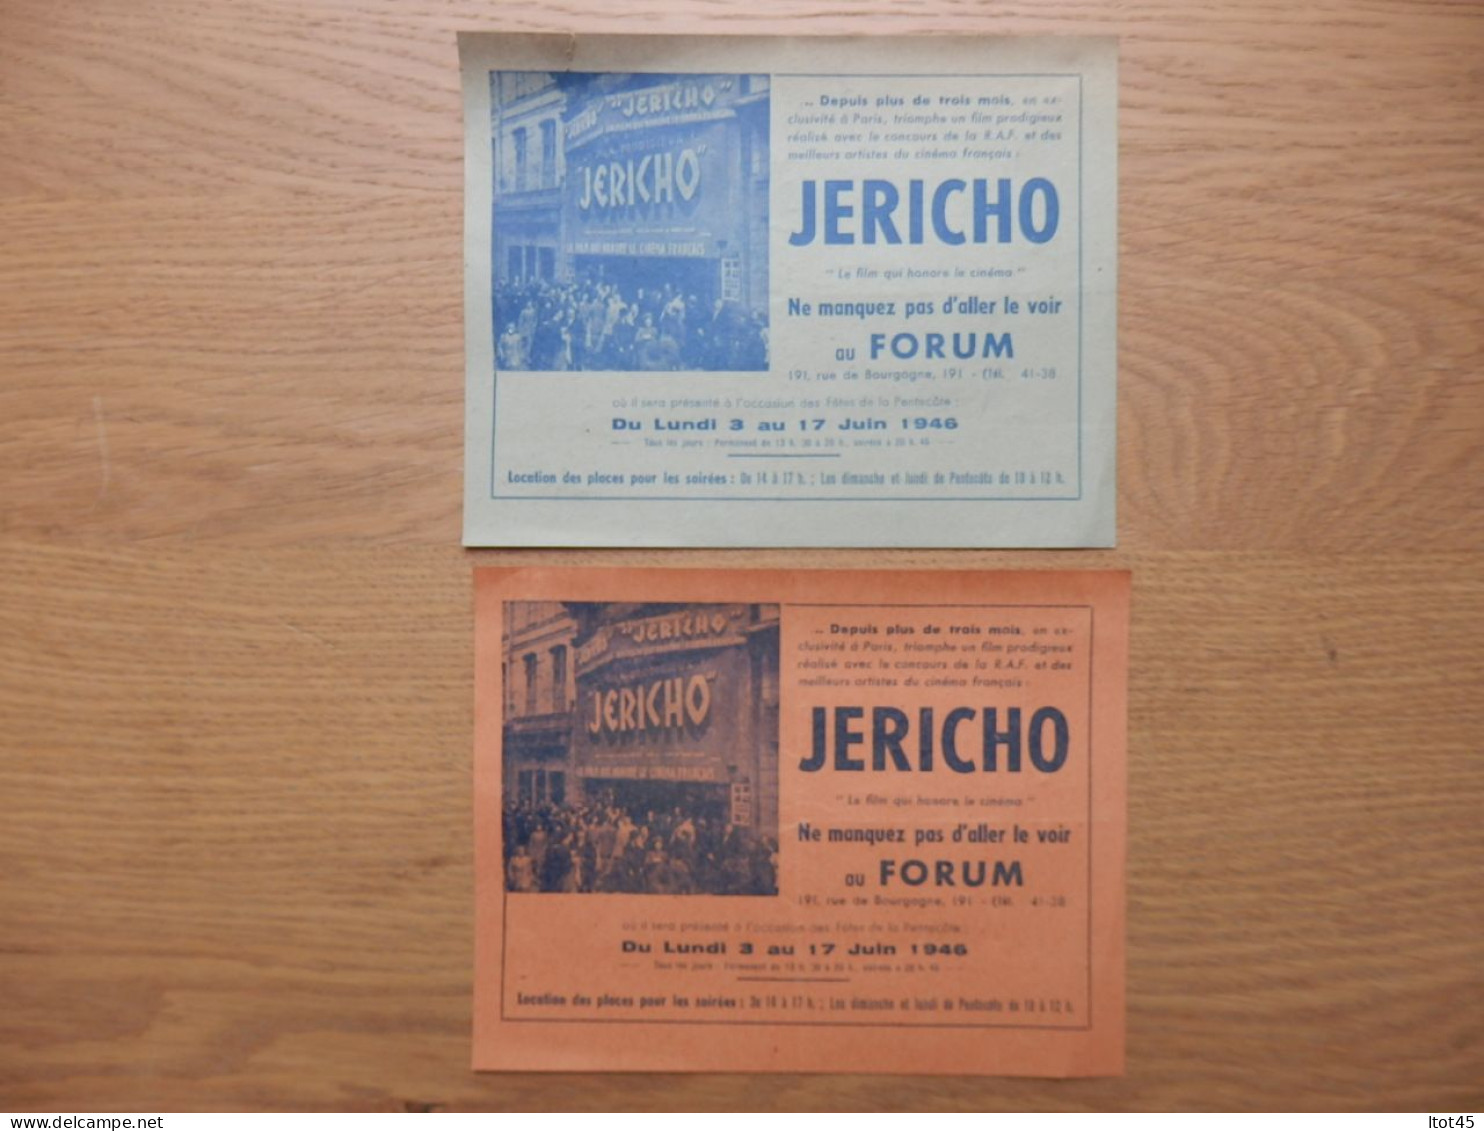 LOT DE 2 DOCUMENTS PUBLICITAIRES FILM JERICHO DU 03 AU 17 JUIN 1946 - Advertising